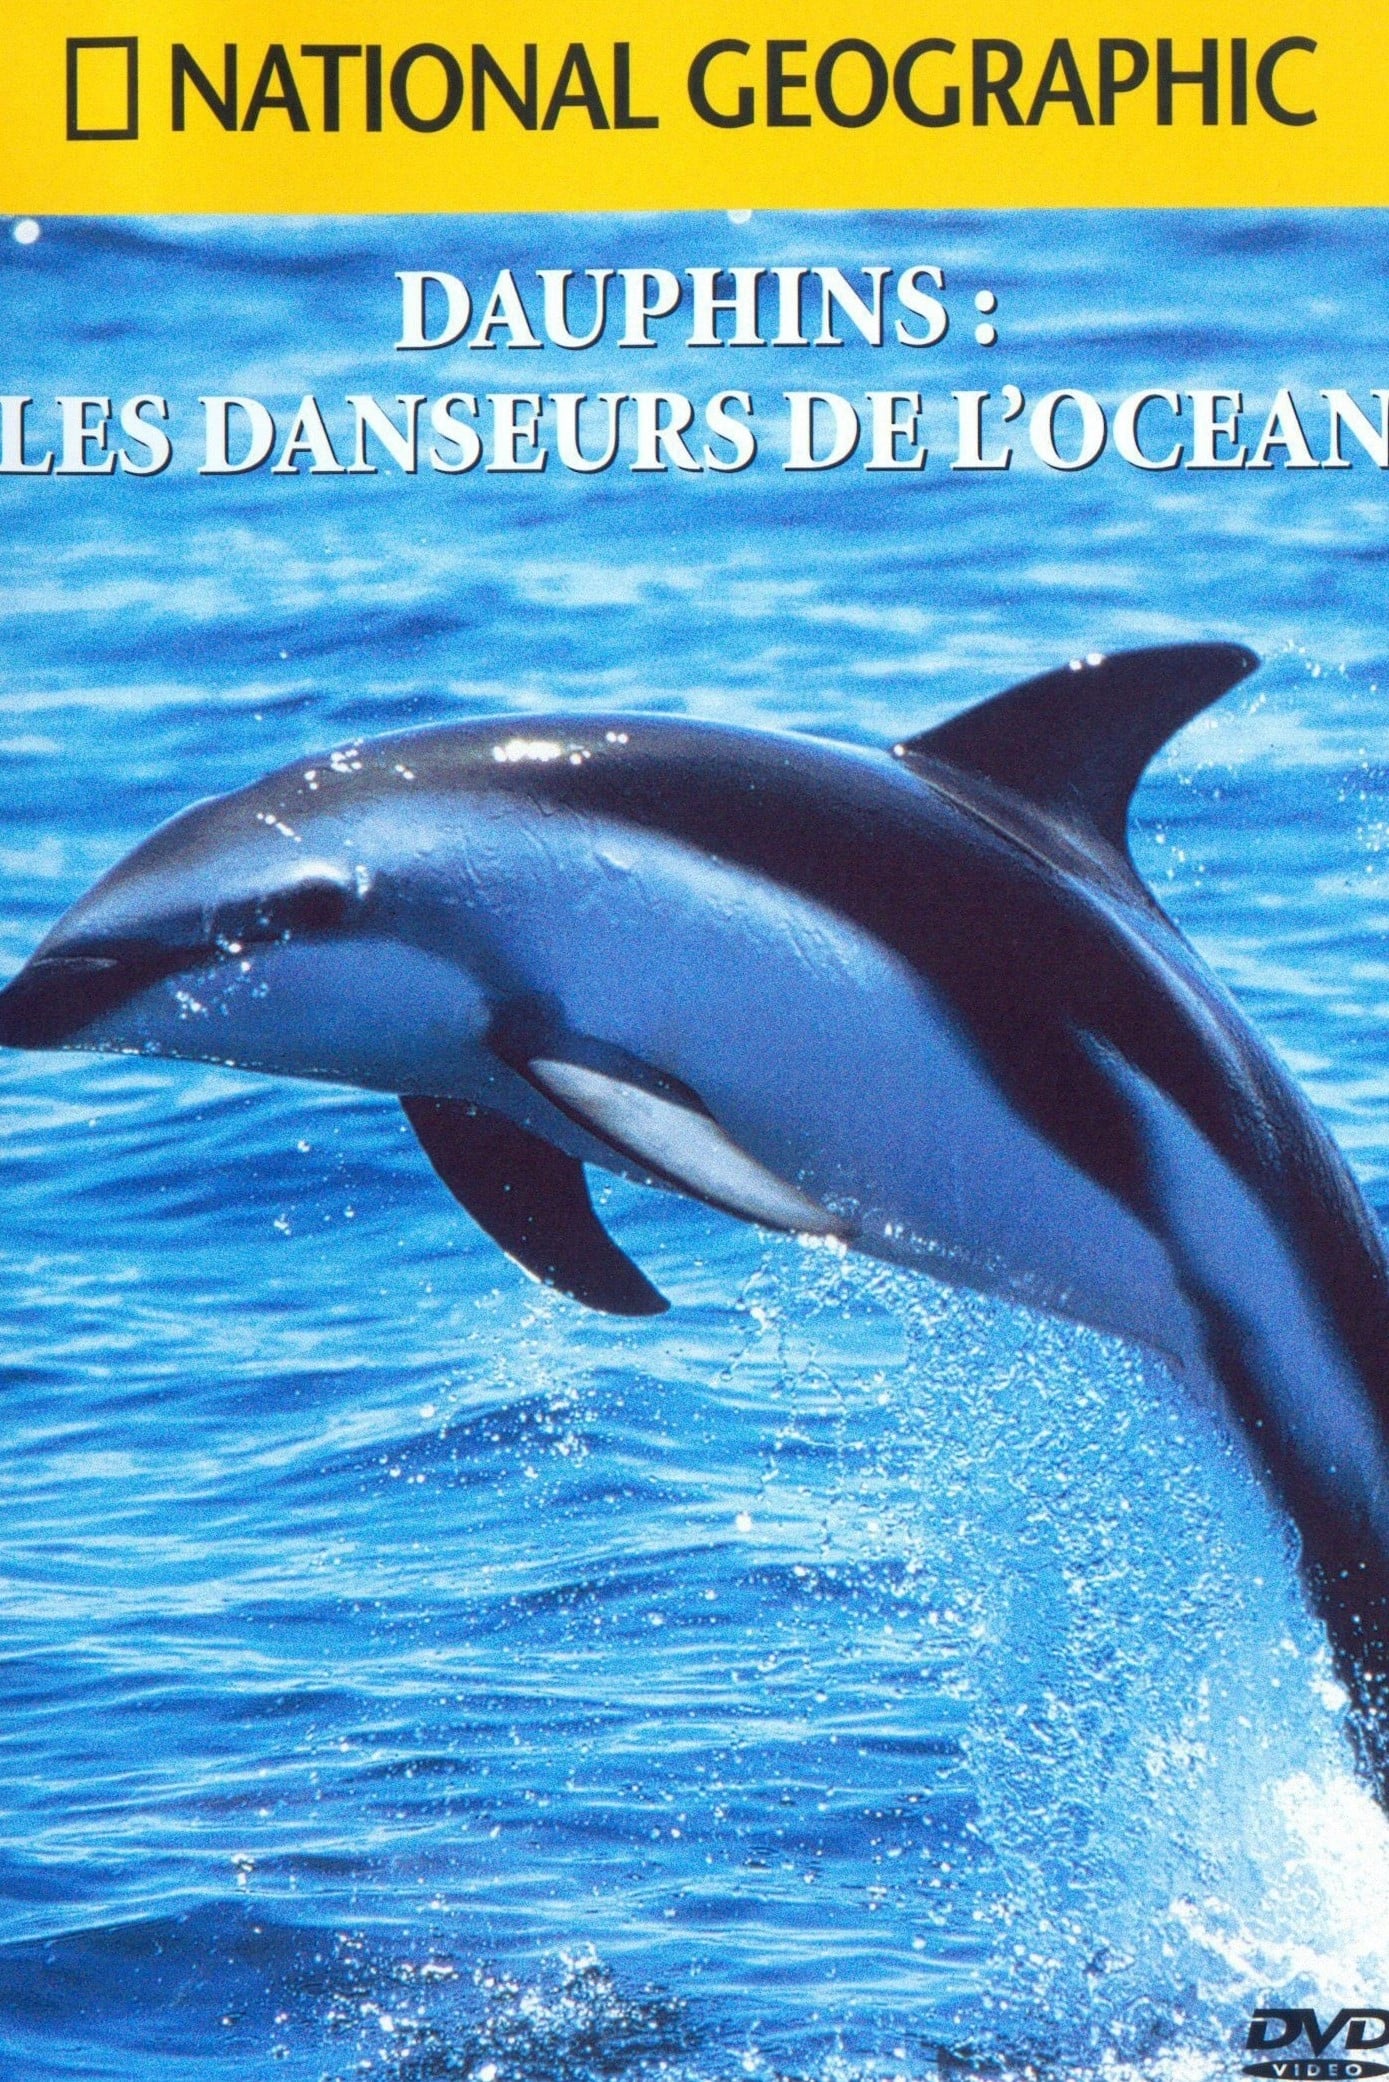 National Geographic : Dauphins, les danseurs de l'océan